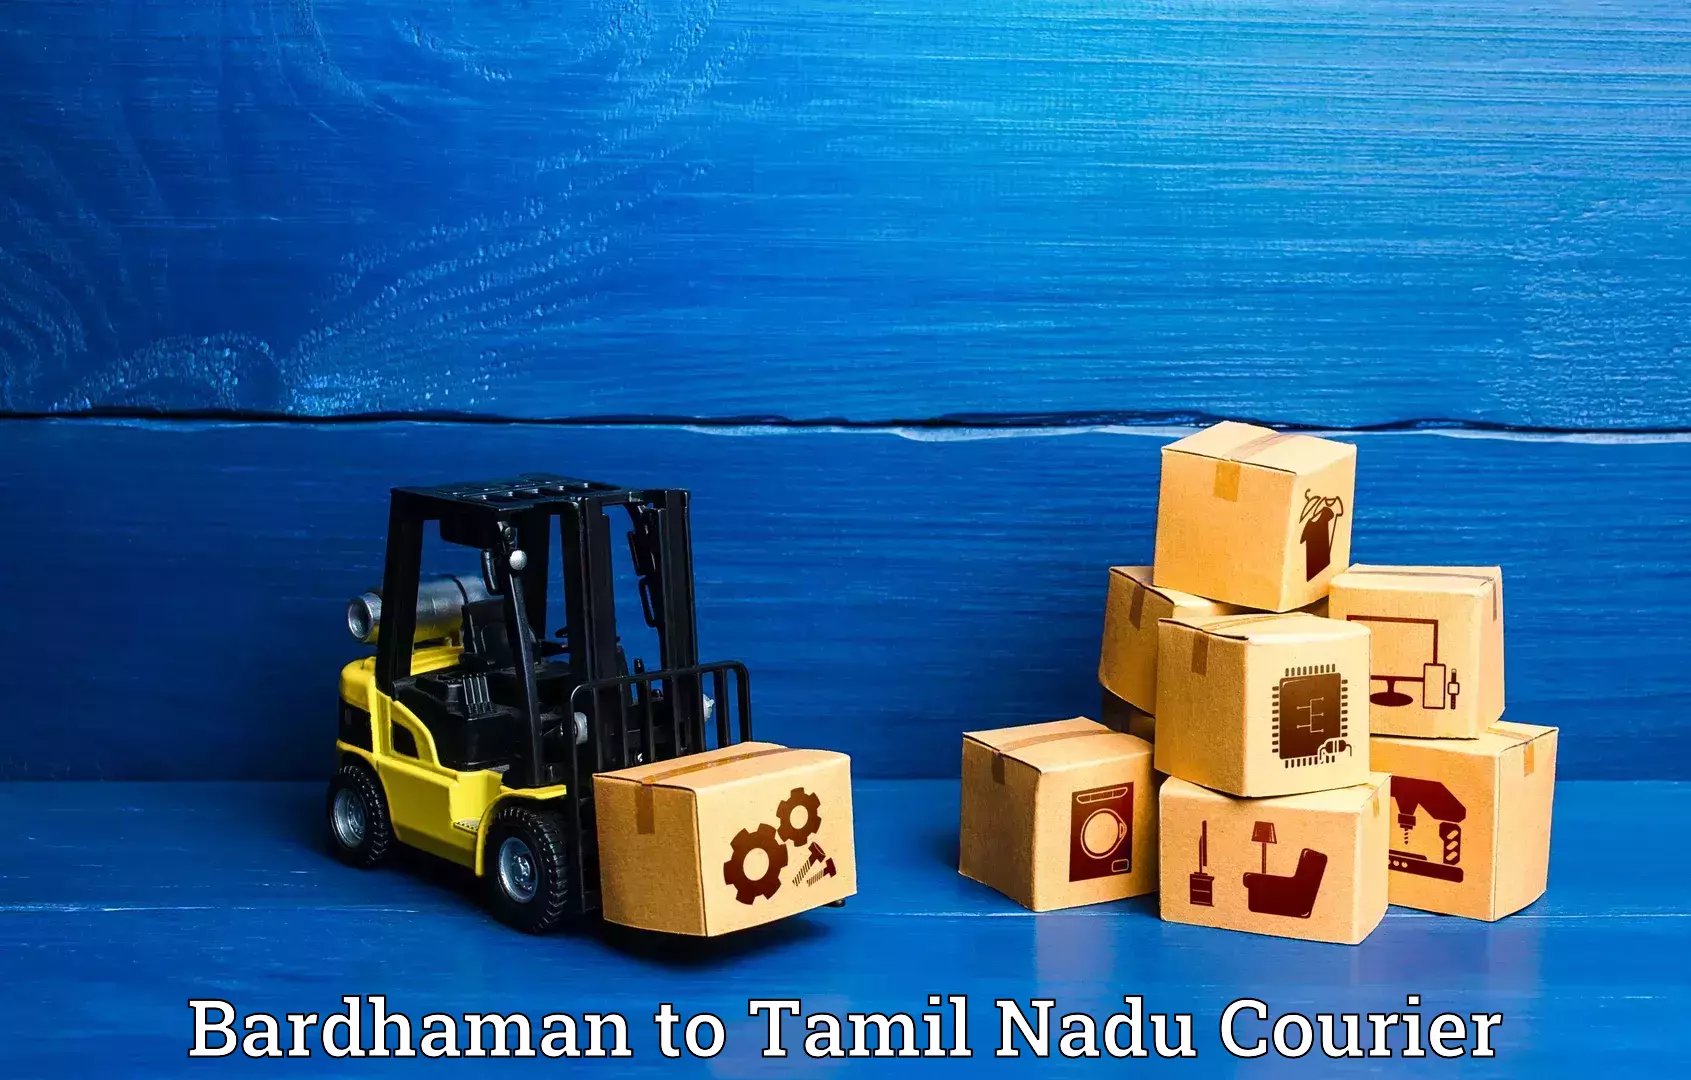 Urgent luggage shipment Bardhaman to Chennai